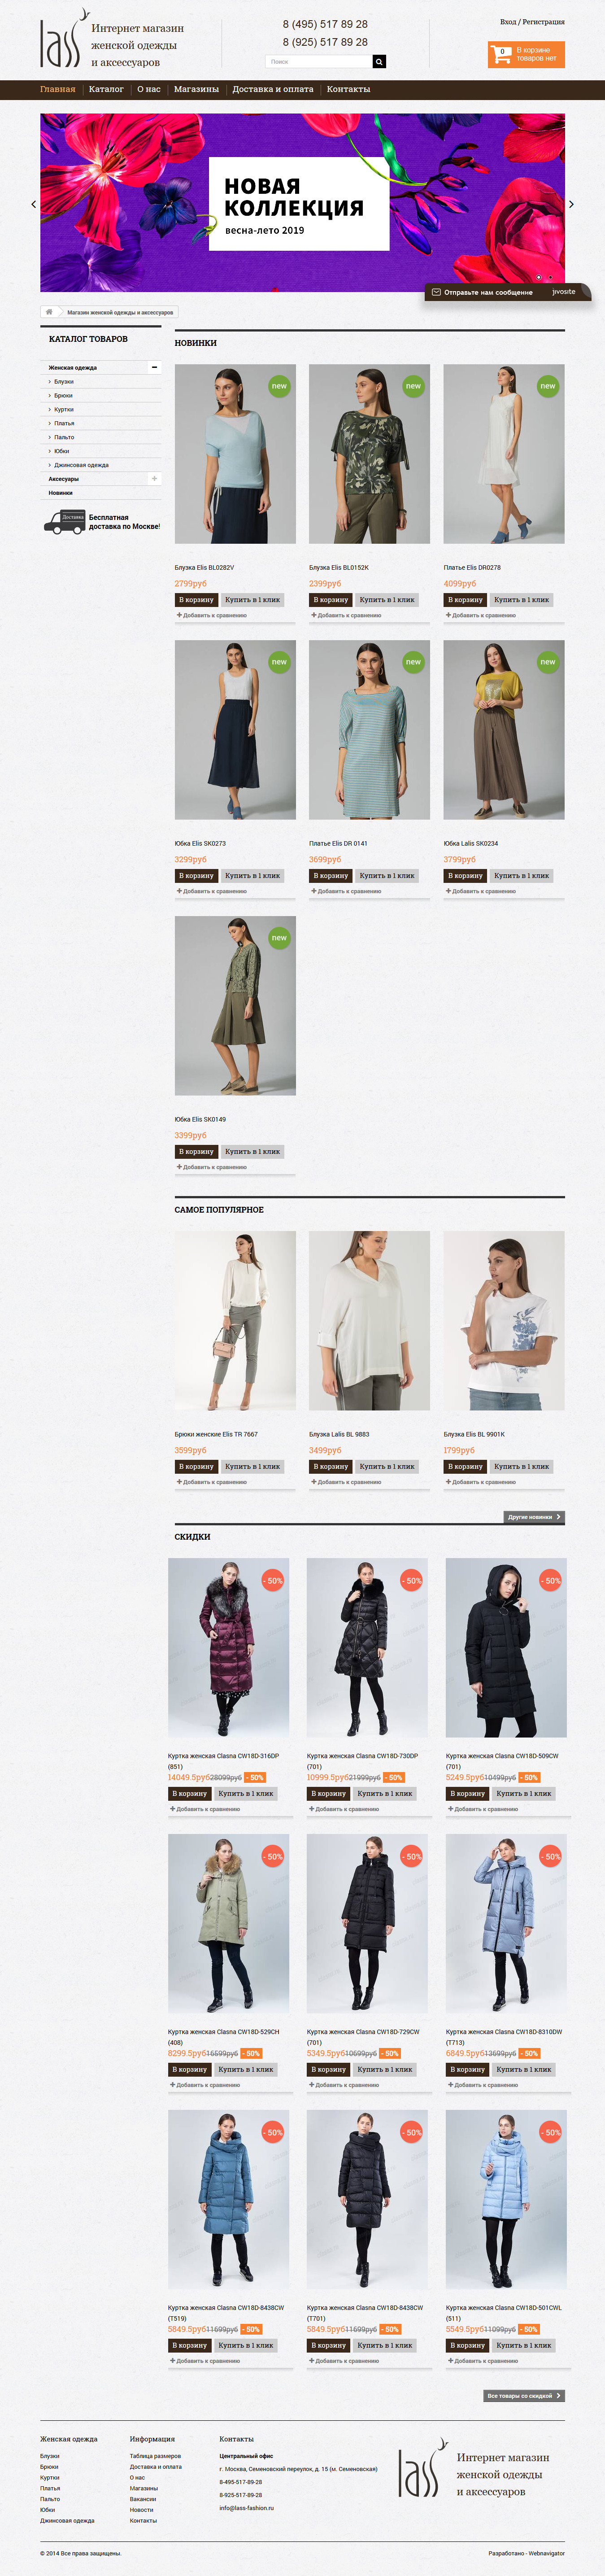 Интернет магазин женской одежды и аксессуаров lass-fashion.ru.